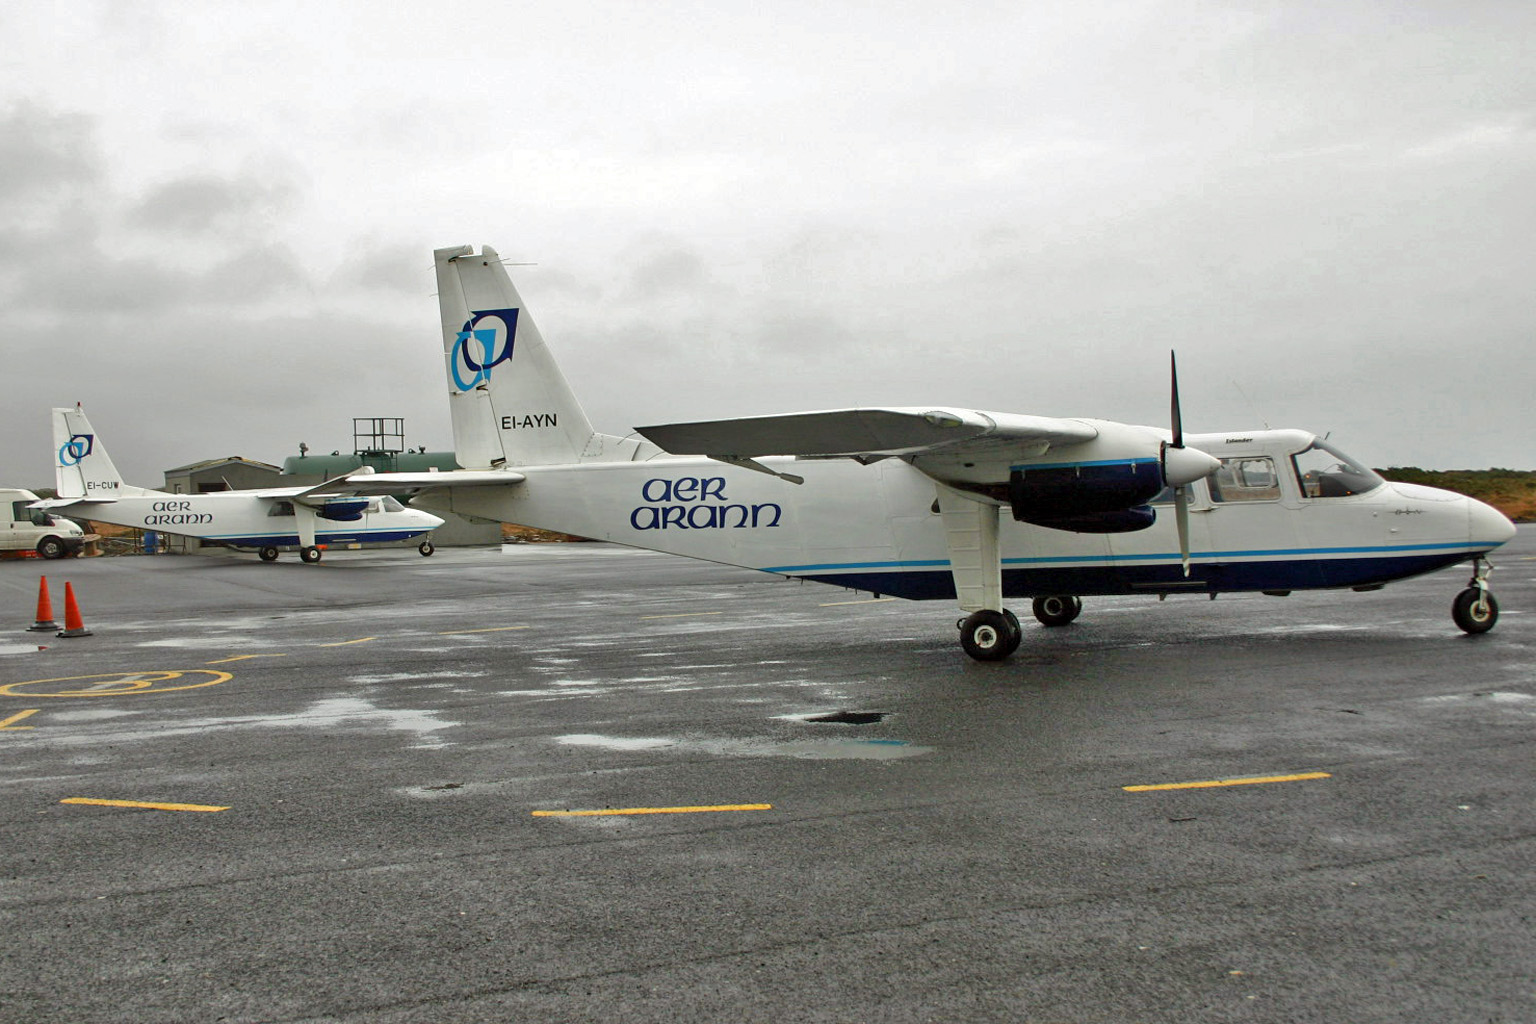 UPDATE: Irish Government to buy Connemara Airport/EICA